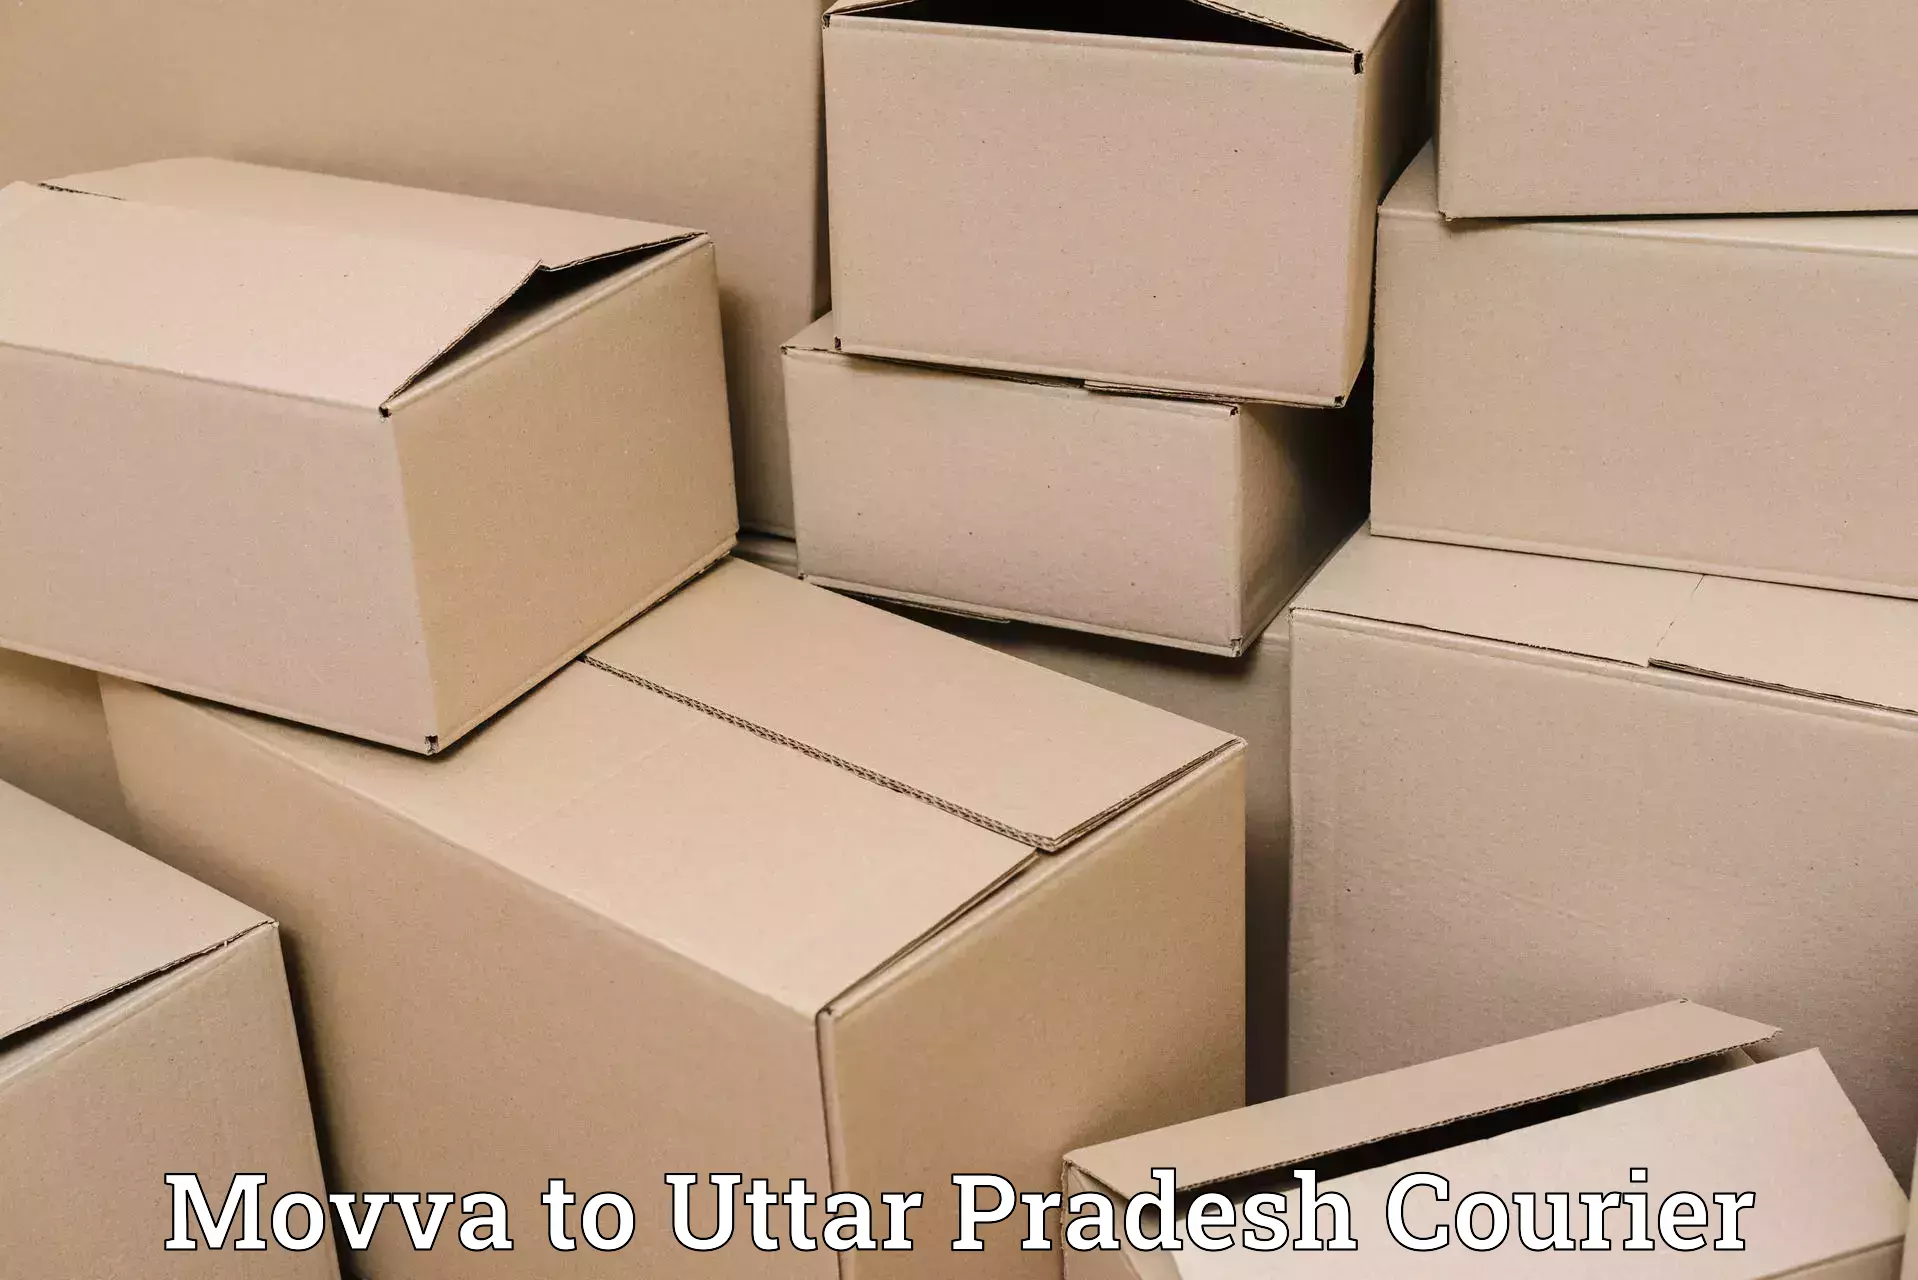 Versatile courier options Movva to Khurja